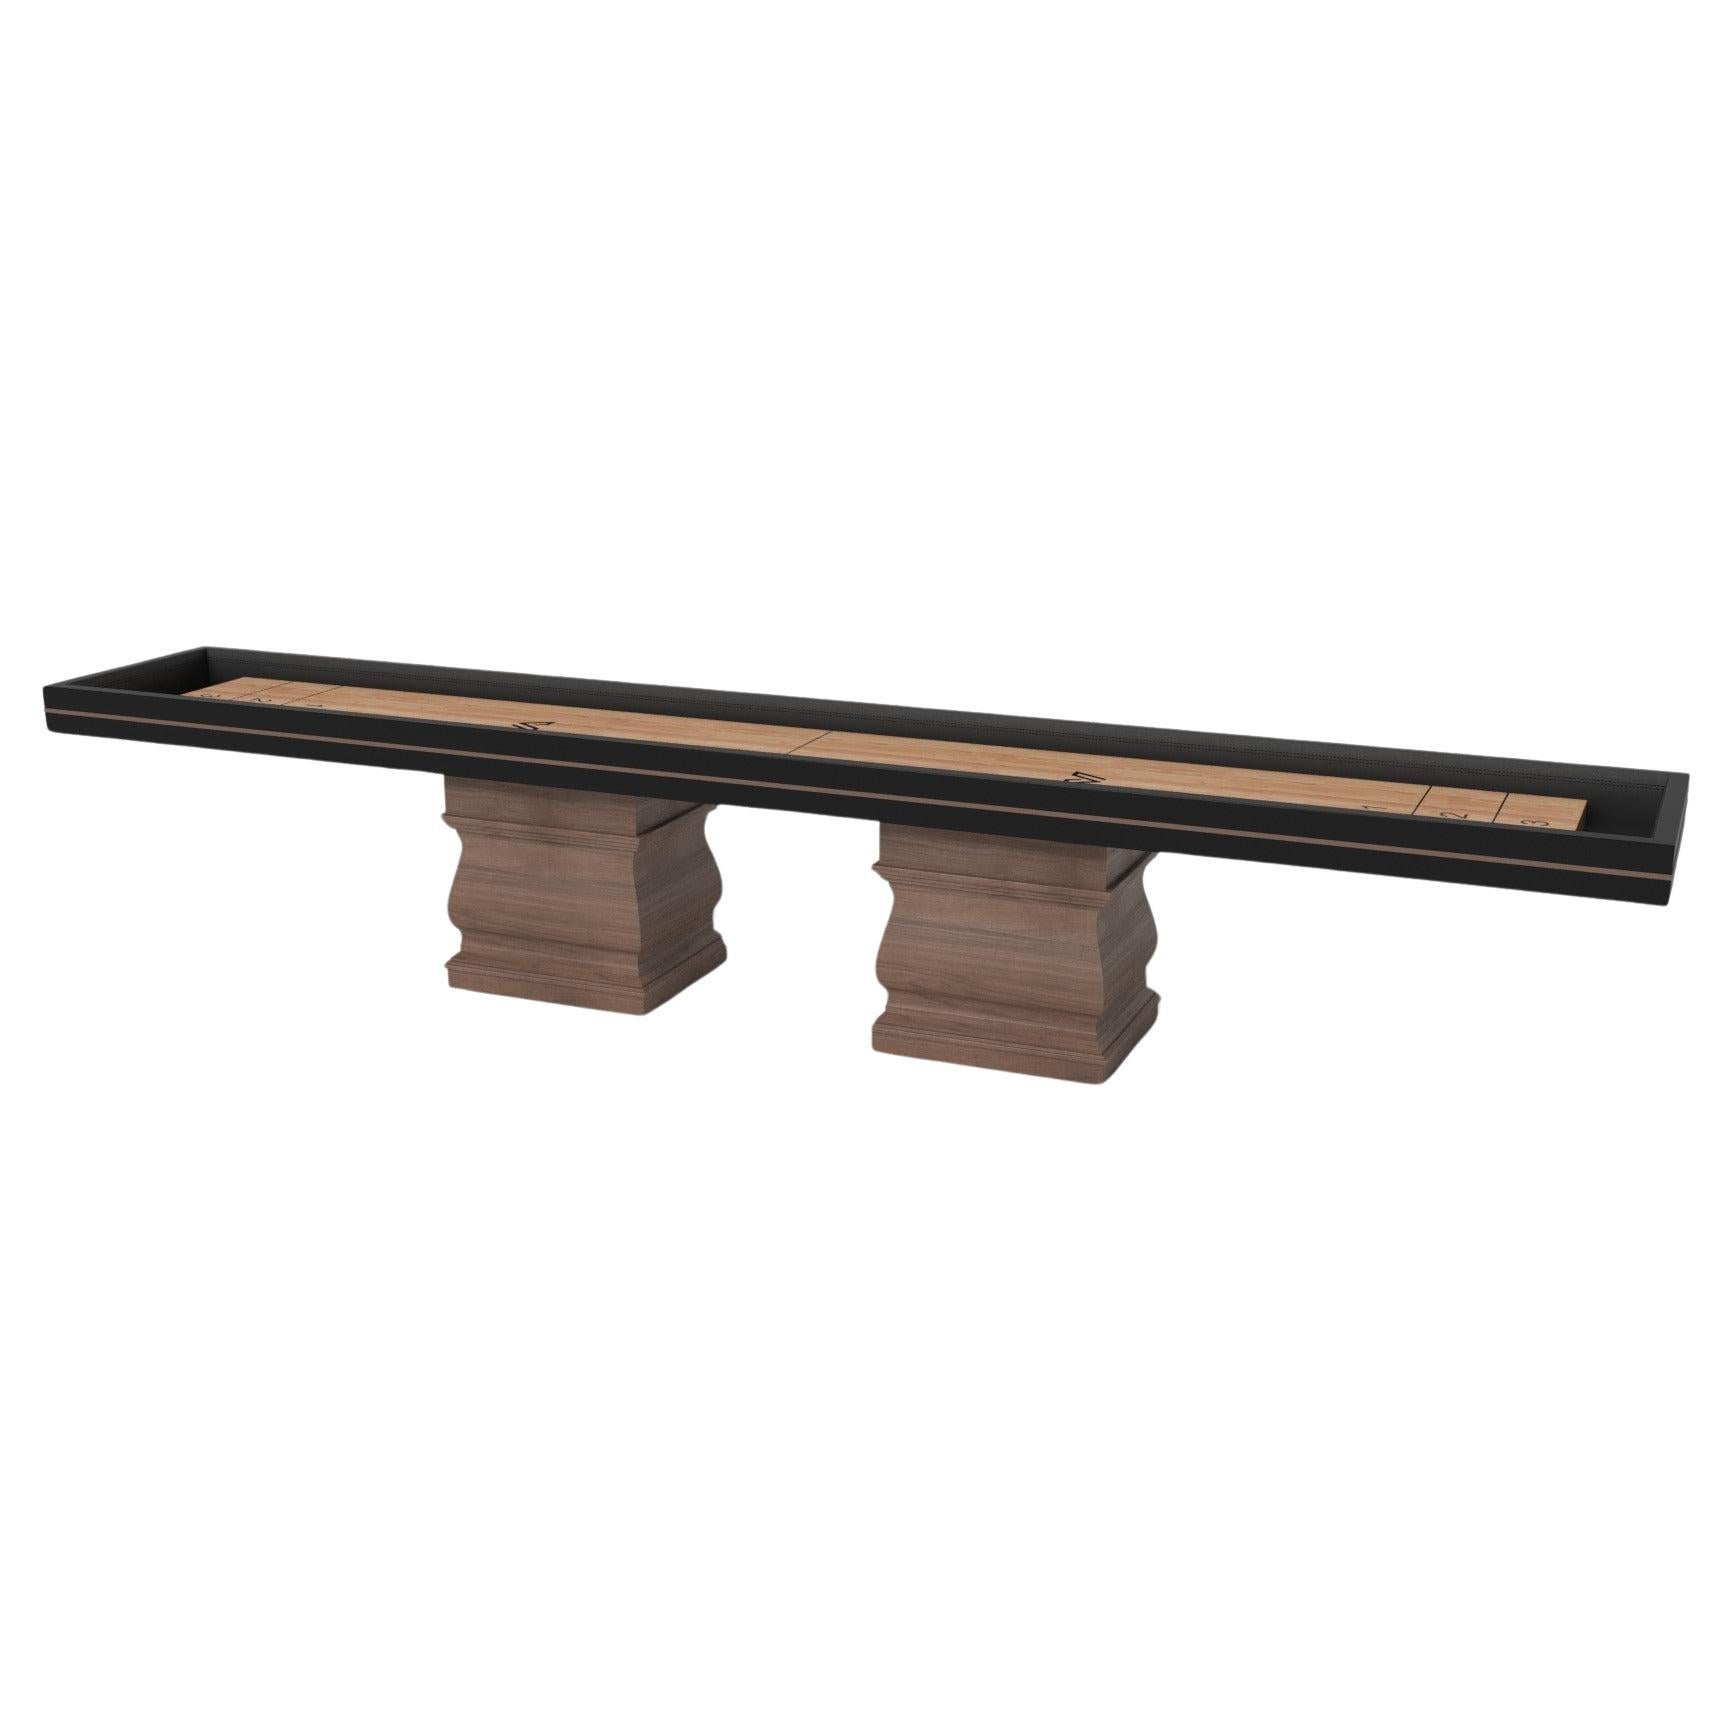 Tables de shuffleboard Elevate Customs Baluster / Solid Walnut Wood en 16' - USA